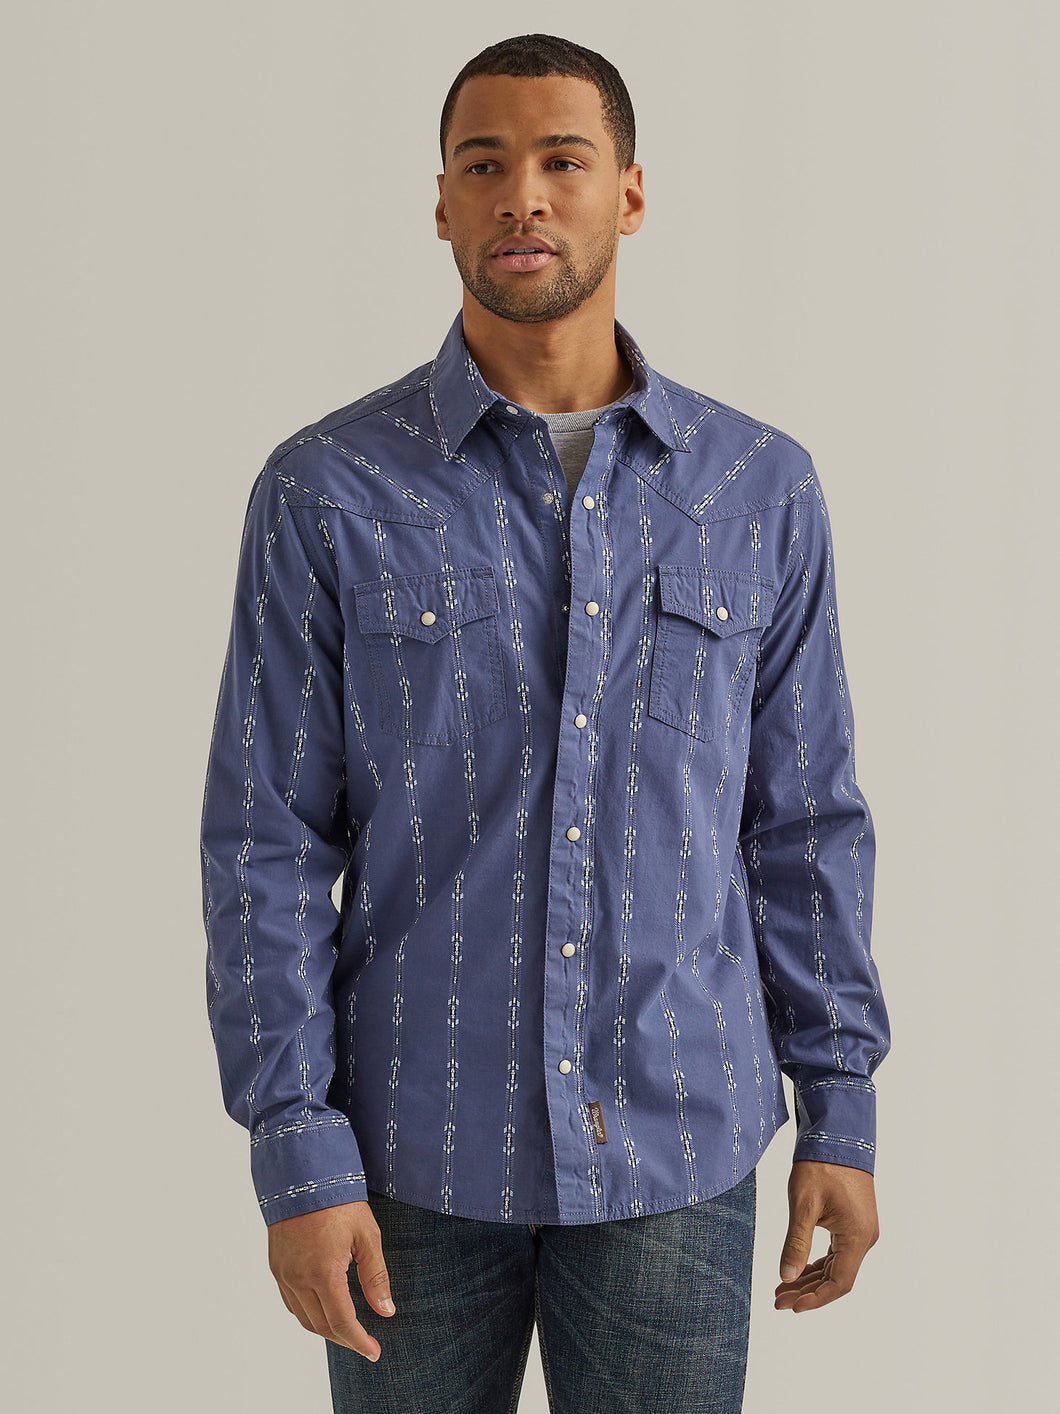 Men's Wrangler Retro Premium Long Sleeve Shirt 44560